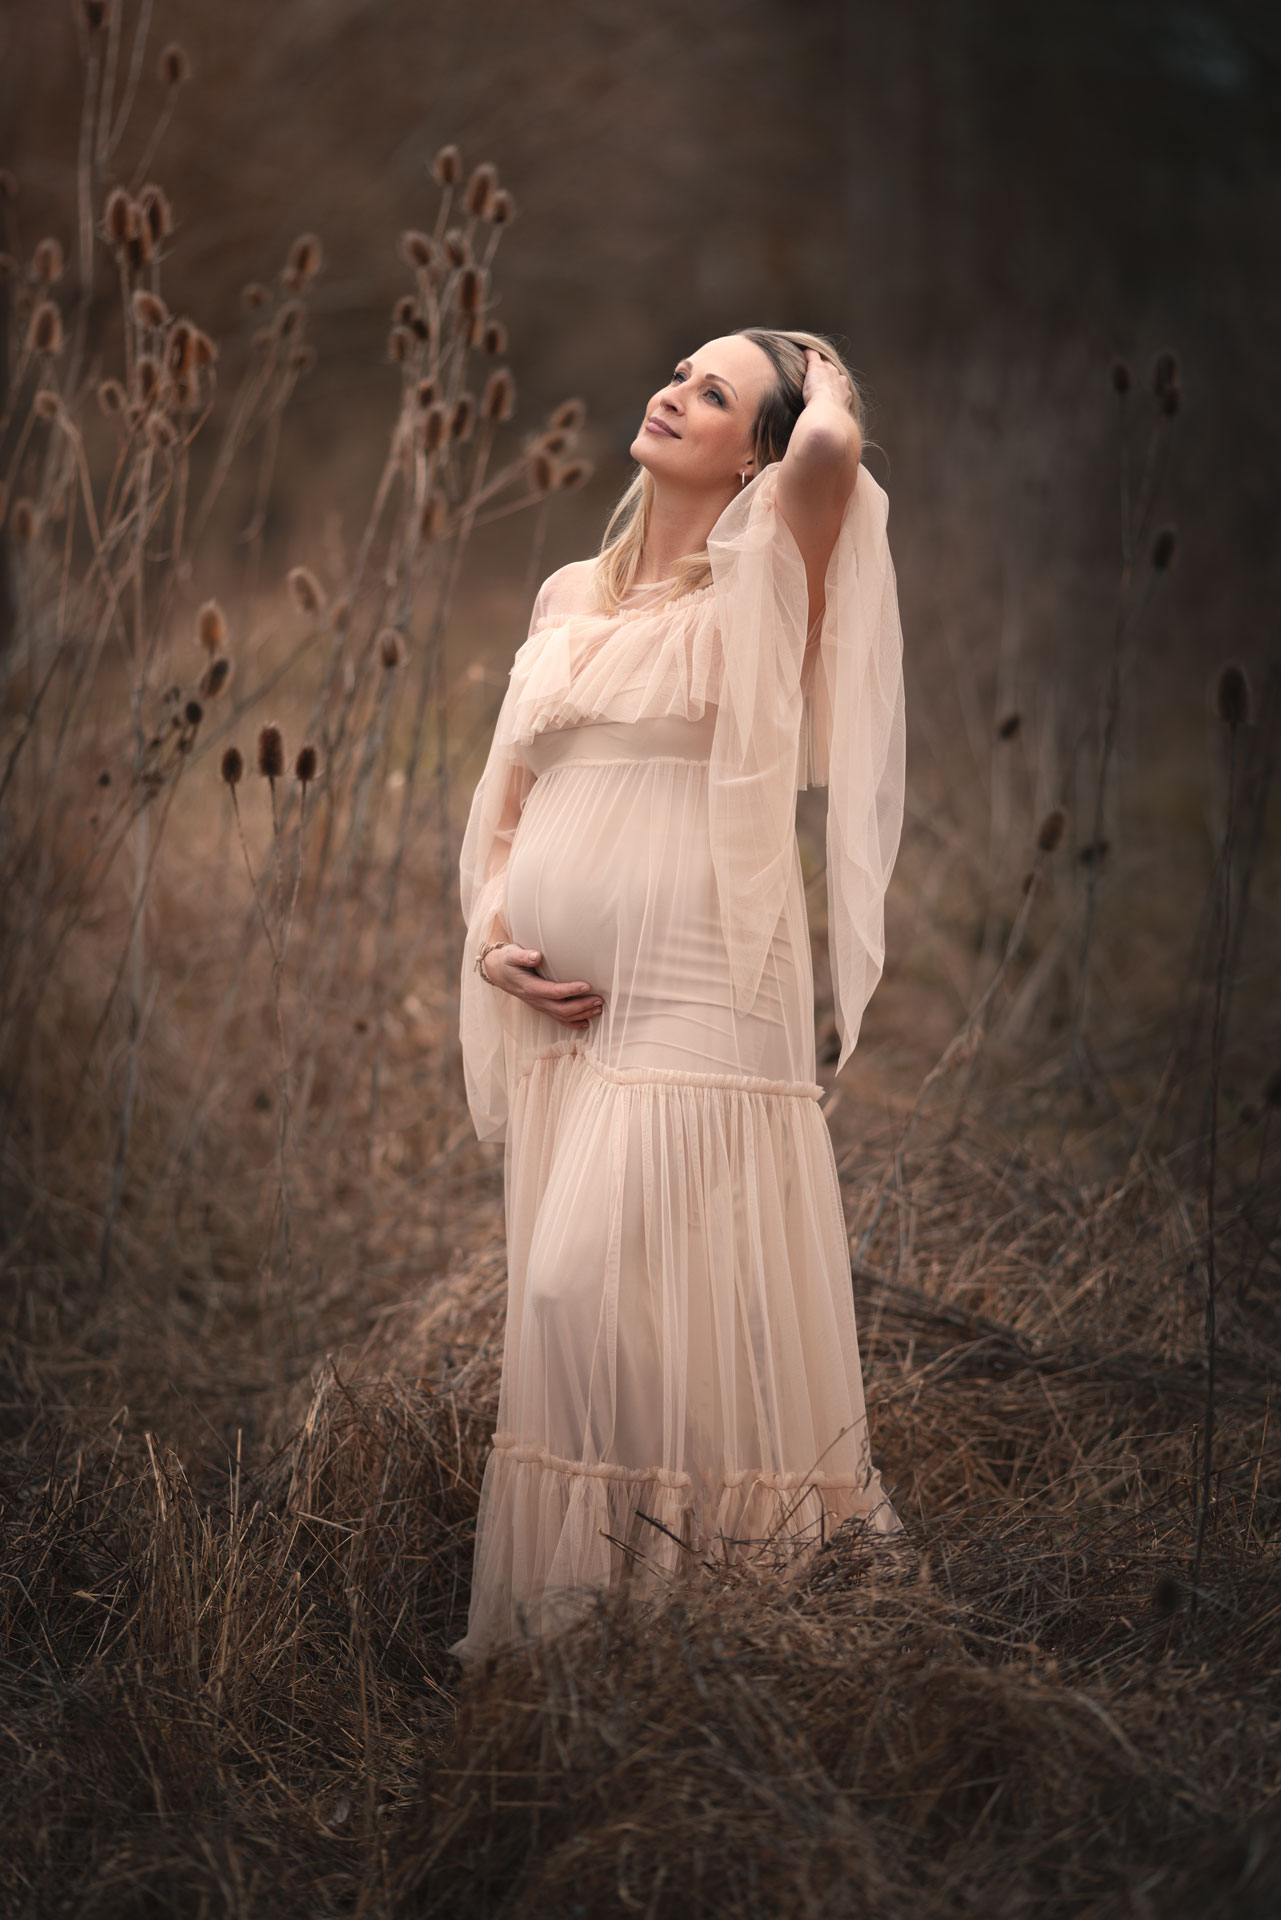 Schwangere Frau im weißen Kleid steht im Studio vor blumigem Hintergrund